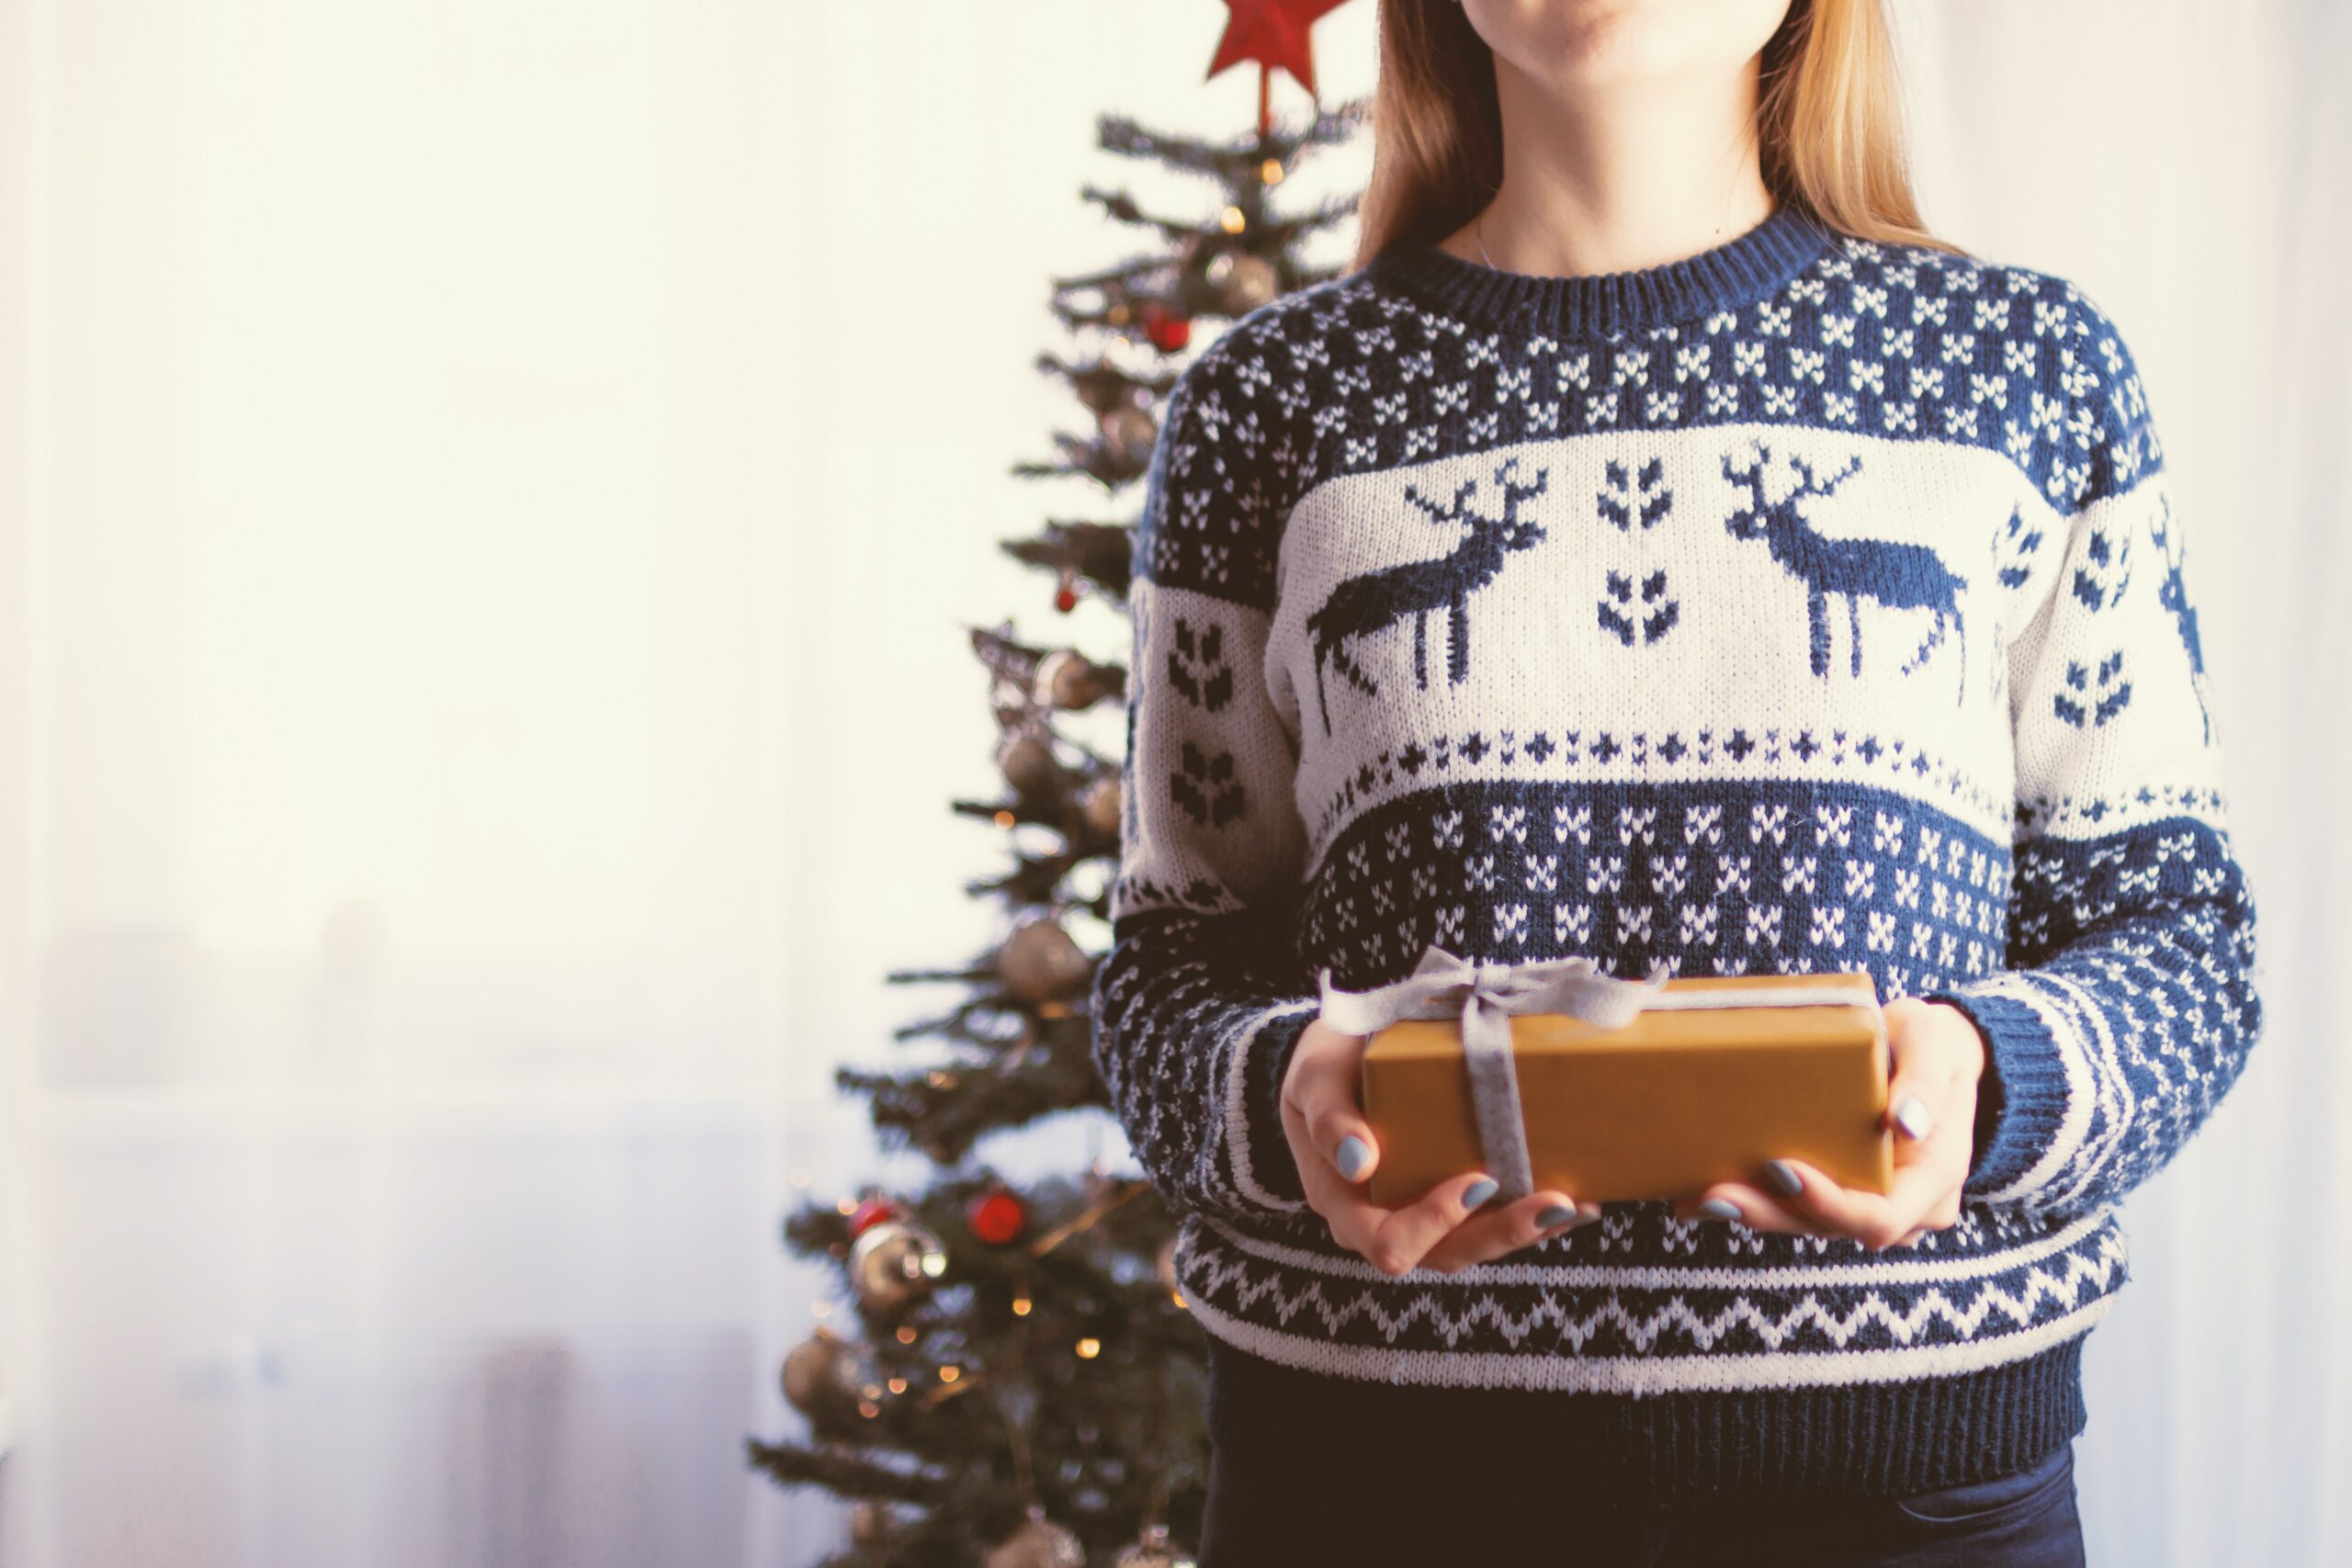 Tipy na dárky pro ženy k Vánocům